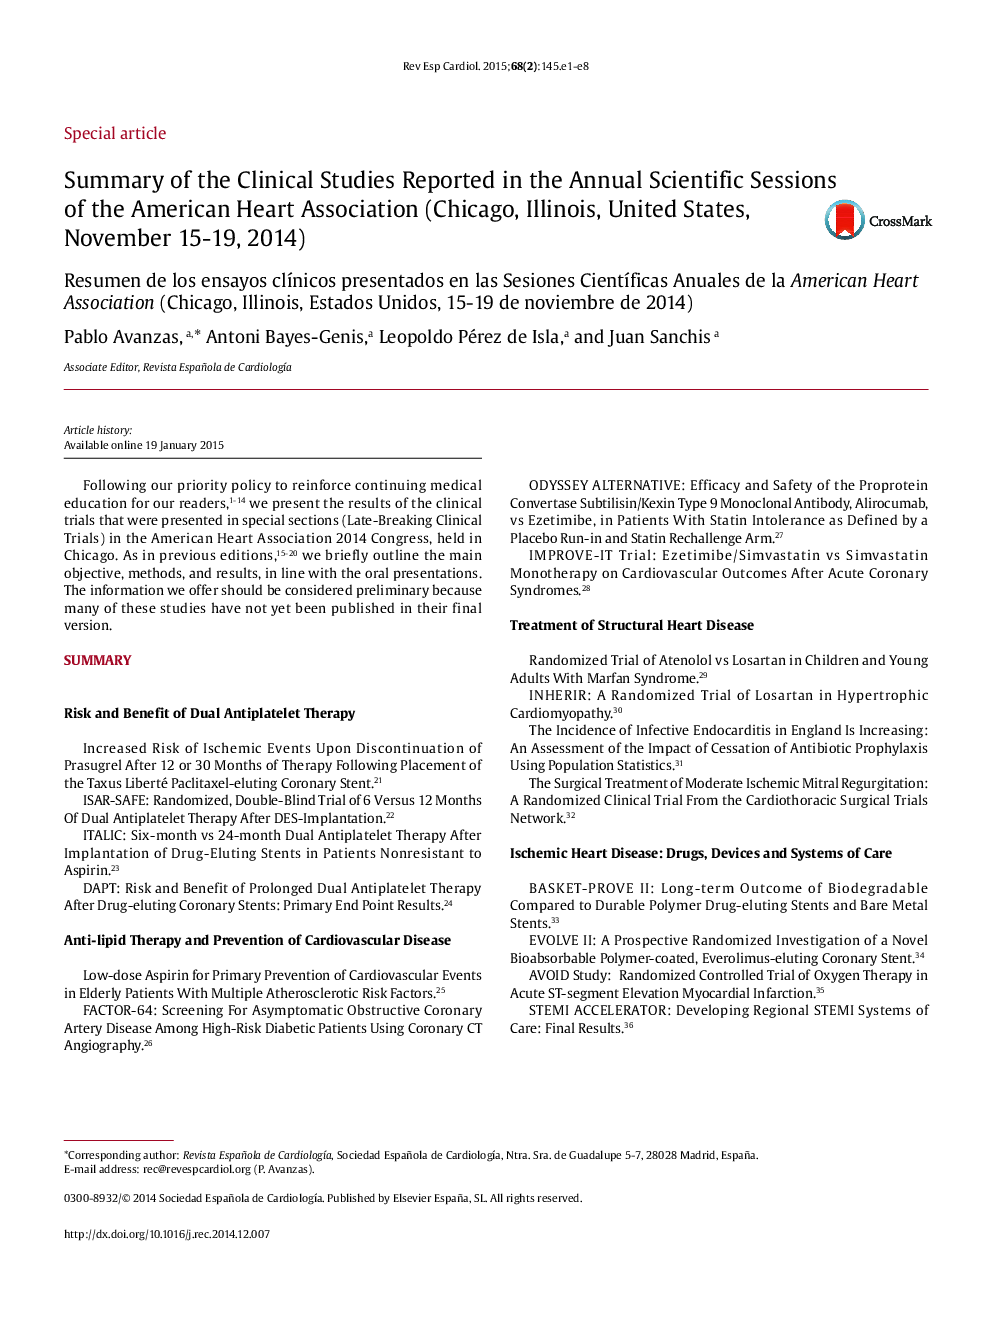 خلاصه ای از مطالعات بالینی گزارش شده در جلسات علمی سالانه انجمن قلب آمریکا (شیکاگو، ایلینویز، ایالات متحده، 15-19 نوامبر 2014) 